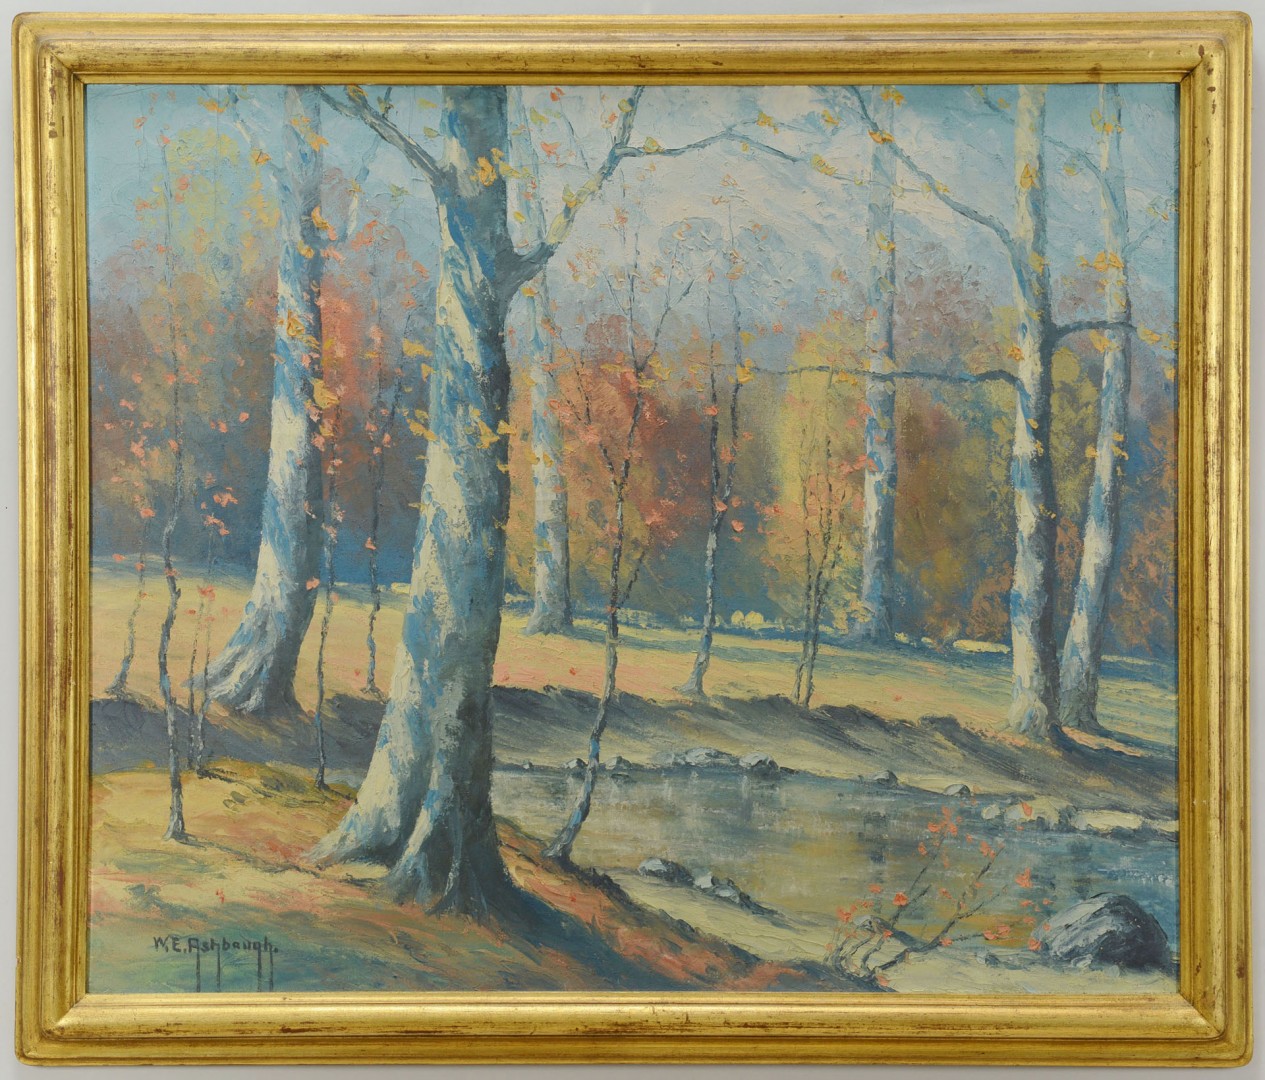 Lot 371: W.E. Ashbaugh, Oil on Canvas Landscape